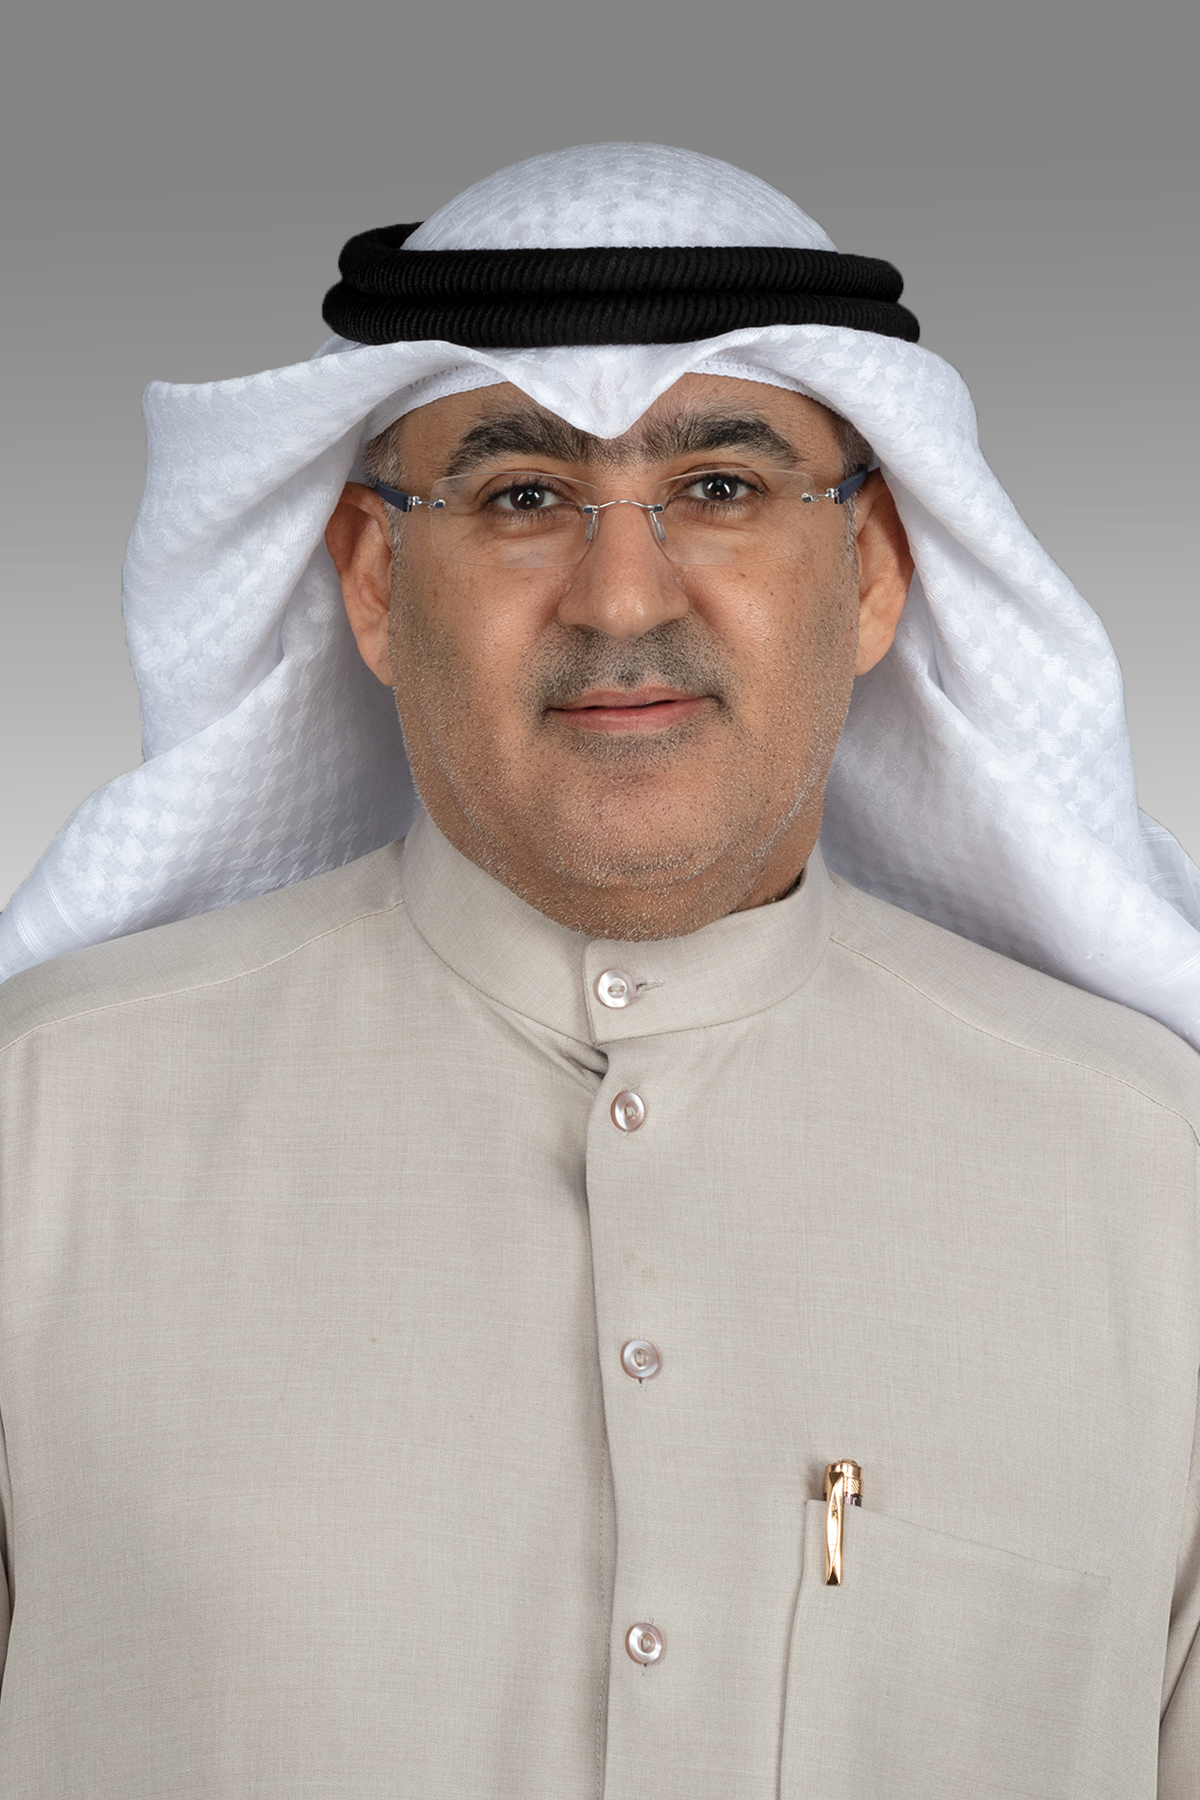 أحمد الحمد يوجه سؤالين إلى وزير التربية وزير التعليم العالي